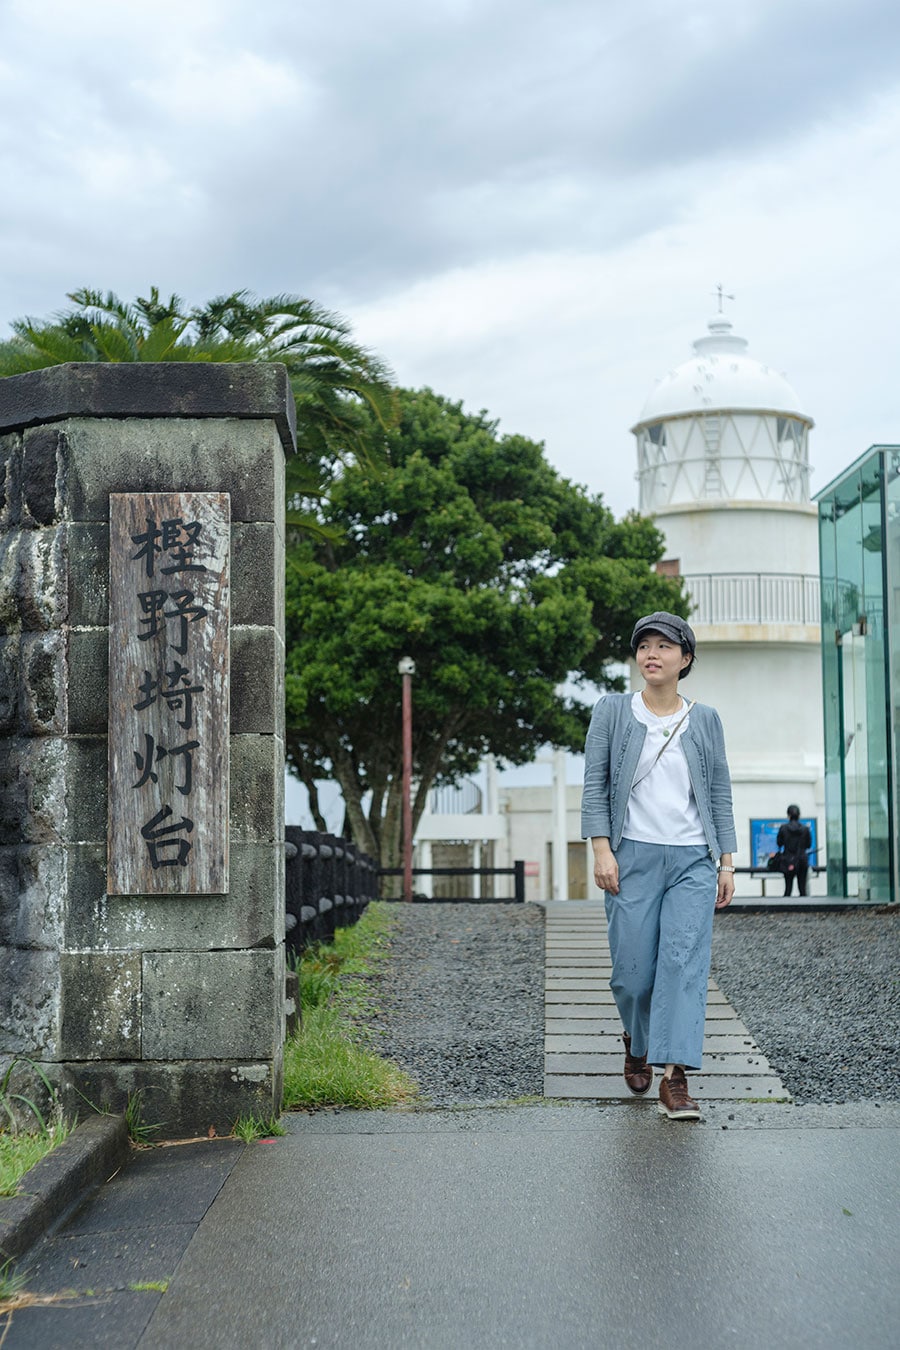 樫野埼灯台の石材には、和歌山県古座川町産の”宇津木石”を使用している。加工のしやすい宇津木石は樫野埼灯台だけでなく潮岬灯台にも使用されている。